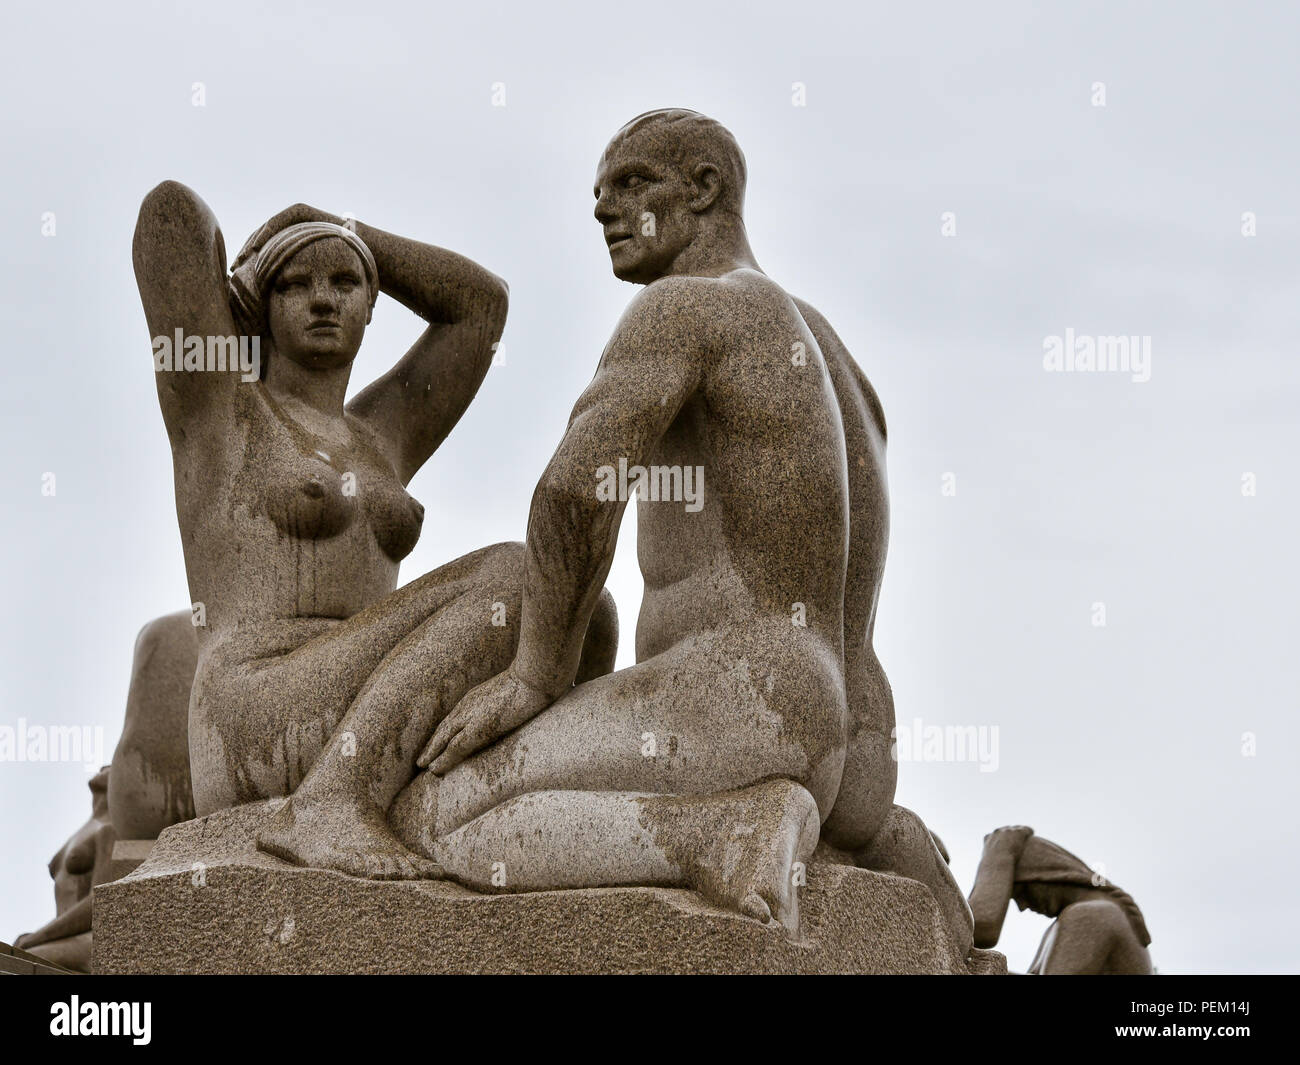 Oslo, Norvegia - Agosto 12, 2018: sculture di Gustav Vigeland (1869-1943), celebre scultore norvegese, Frogner Park, Oslo. Foto Stock